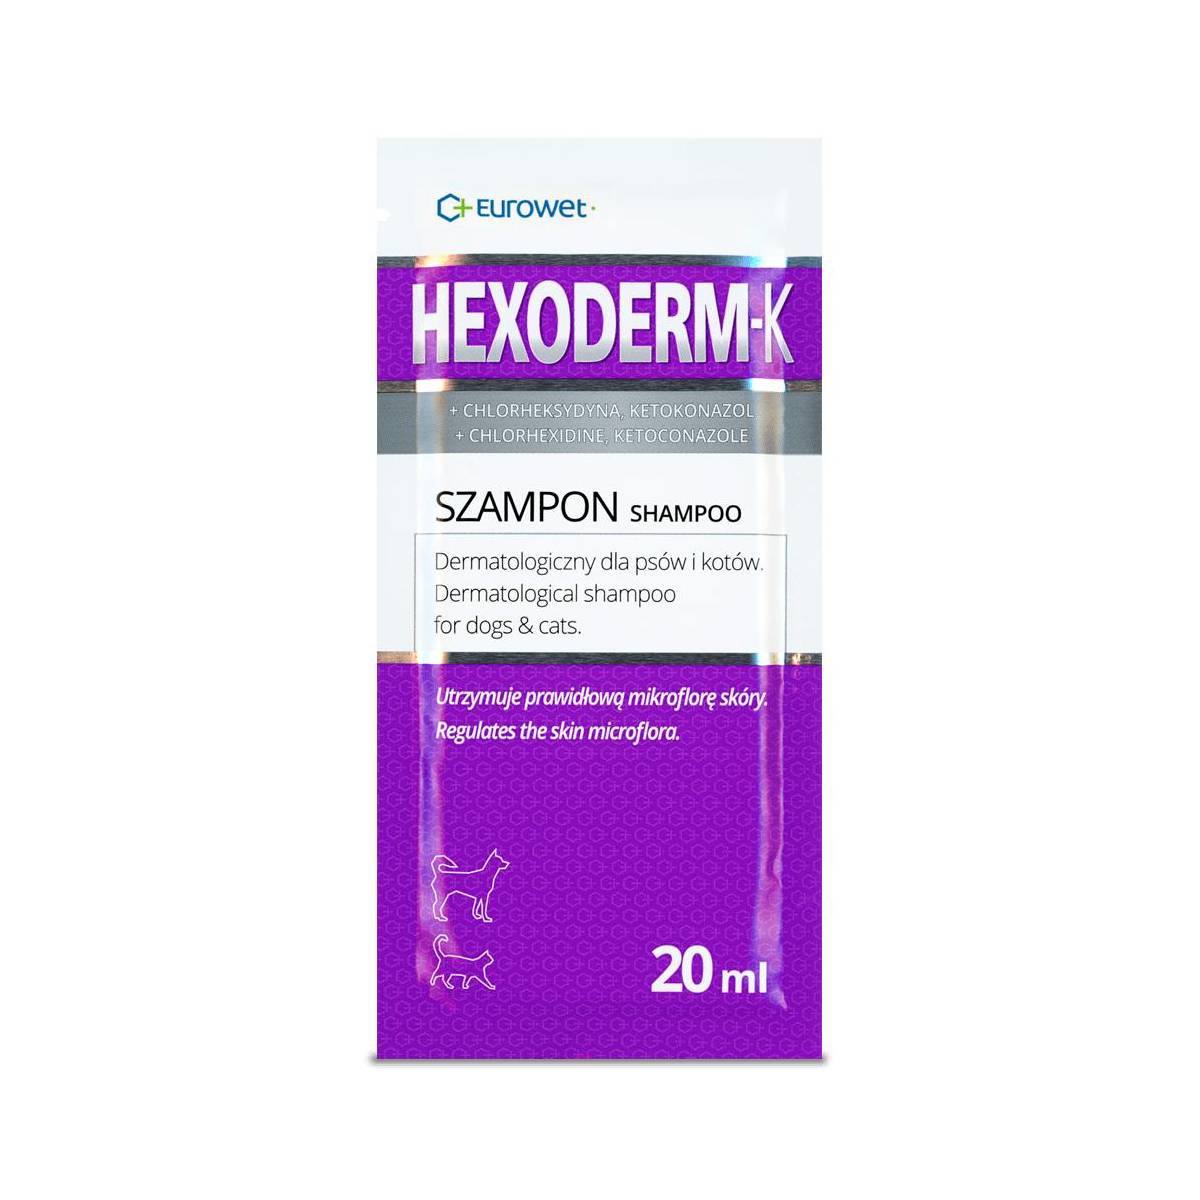 EUROWET Hexoderm K - dermatologiczny szampon dla psów i kotów z chlorheksydyną i ketokonazolem, saszetka 20ml